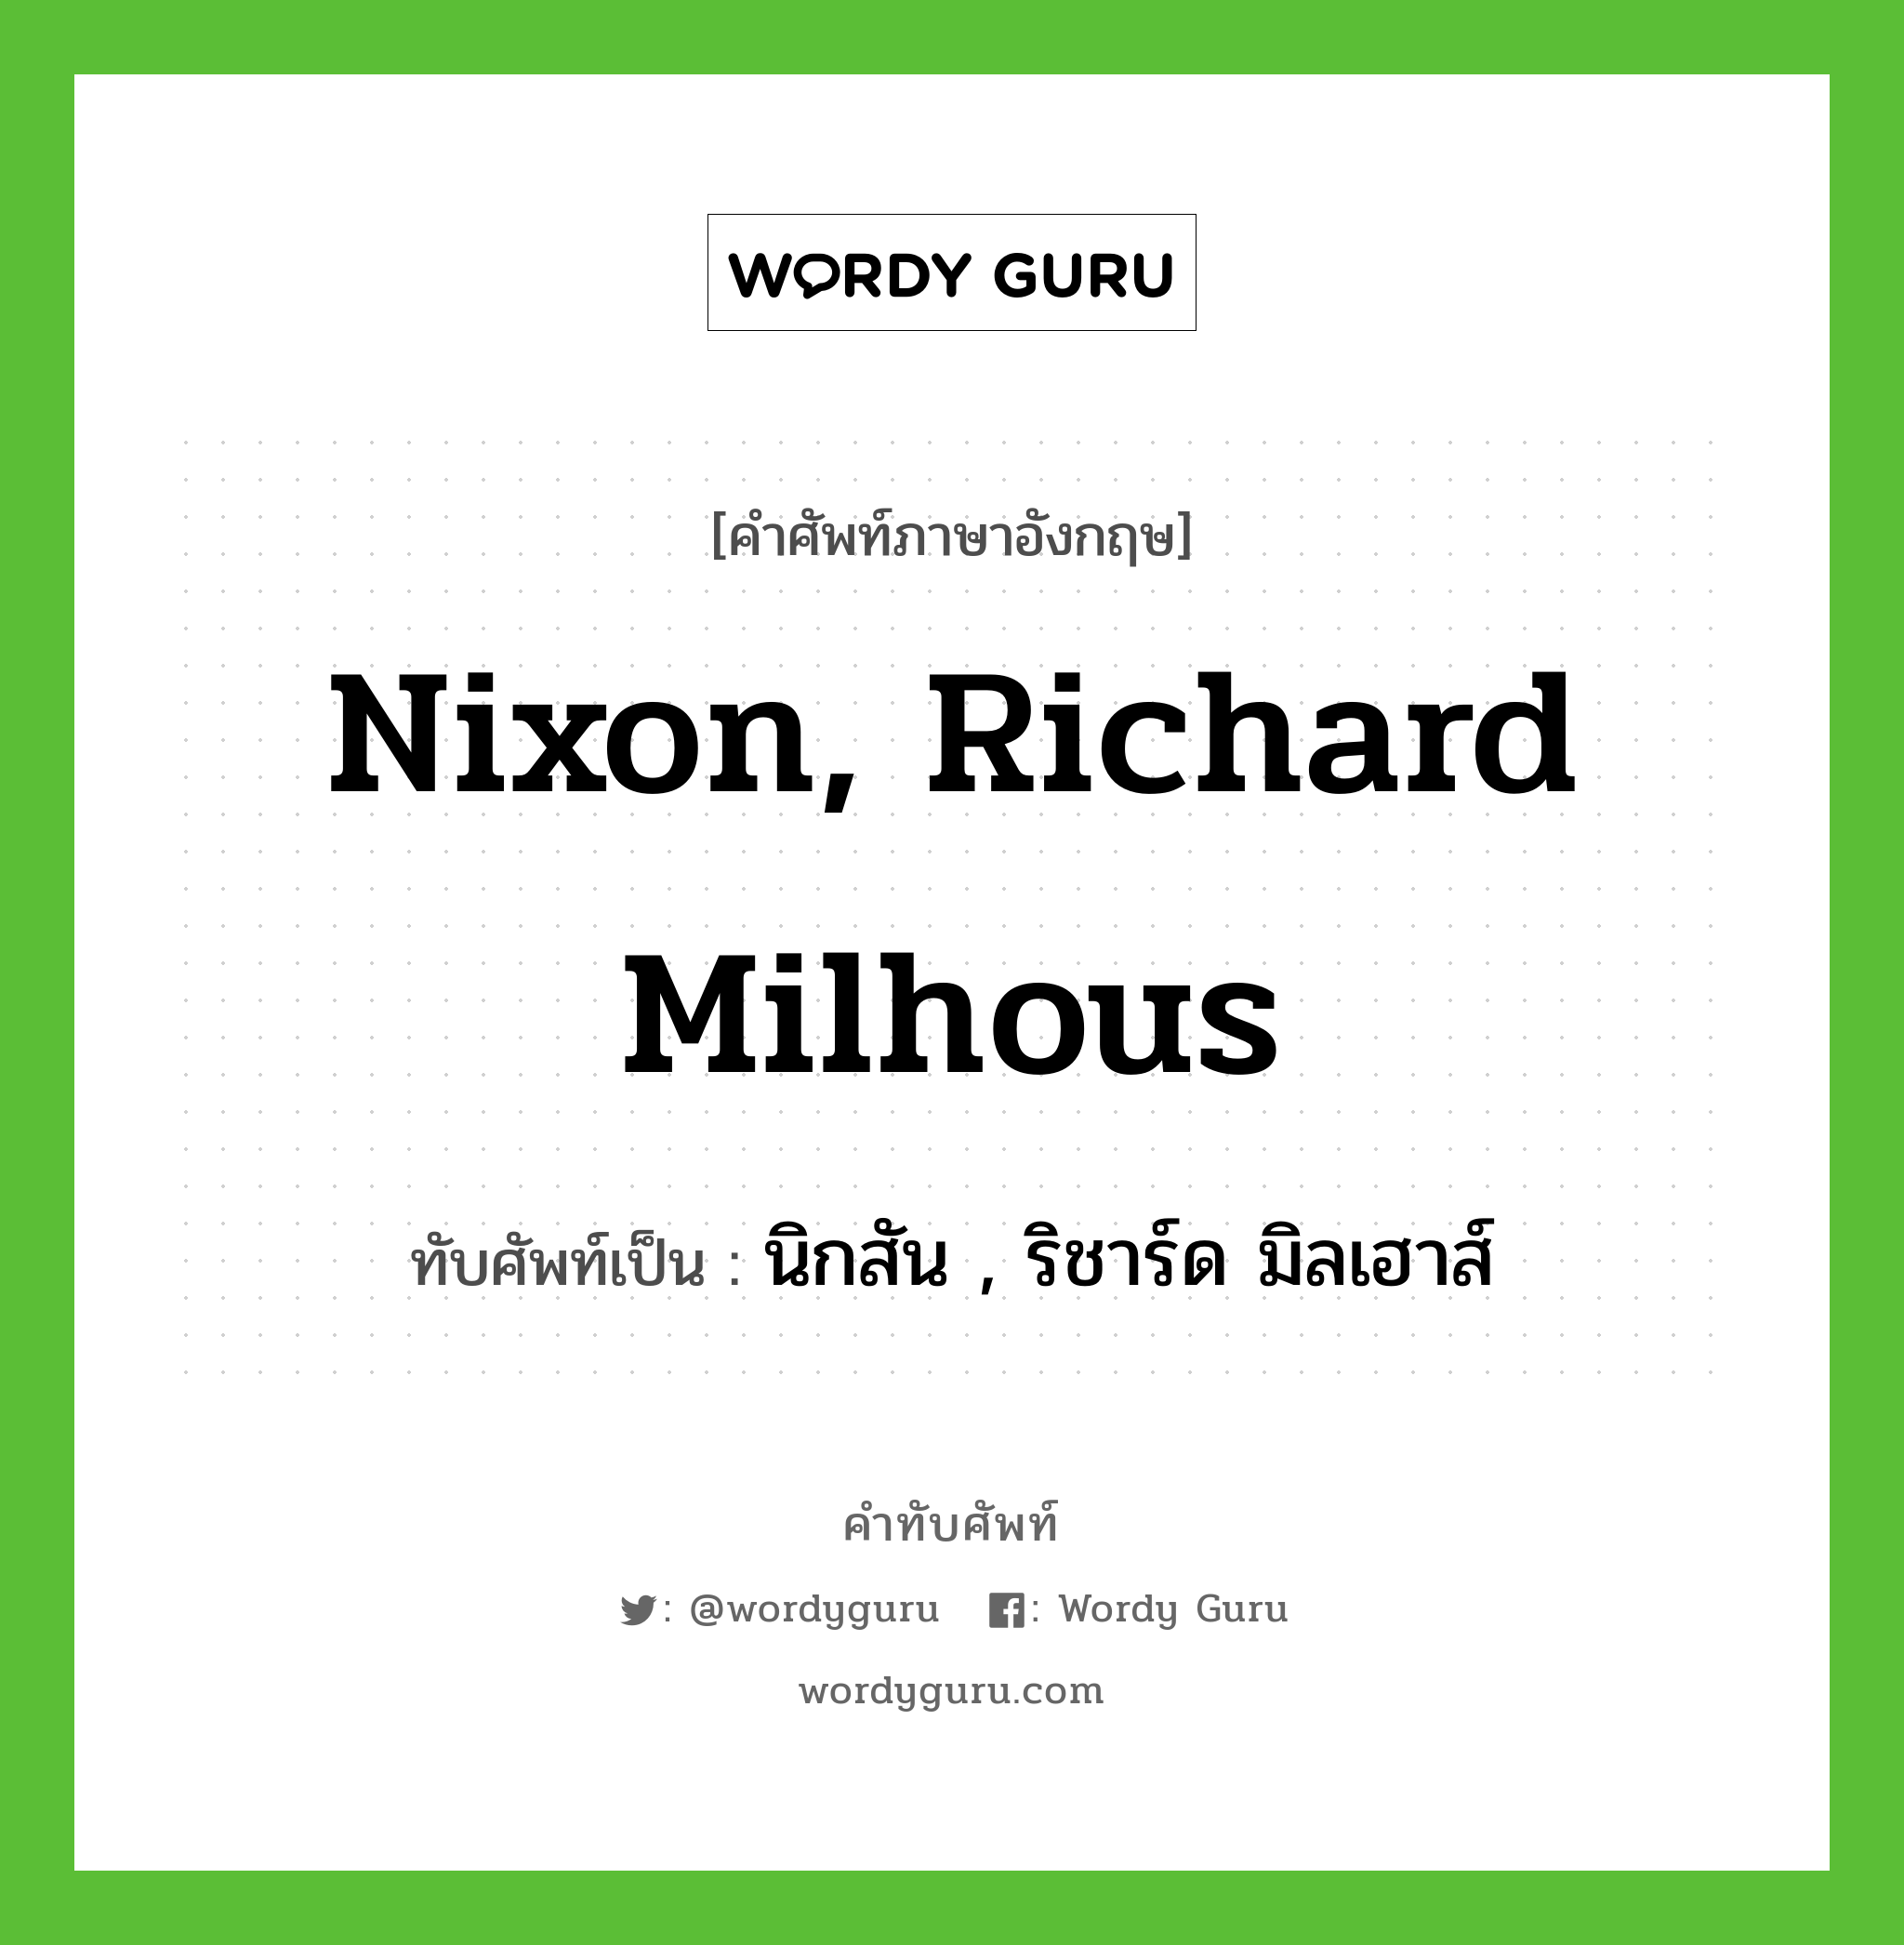 นิกสัน , ริชาร์ด มิลเฮาส์ เขียนอย่างไร?, คำศัพท์ภาษาอังกฤษ นิกสัน , ริชาร์ด มิลเฮาส์ ทับศัพท์เป็น Nixon, Richard Milhous